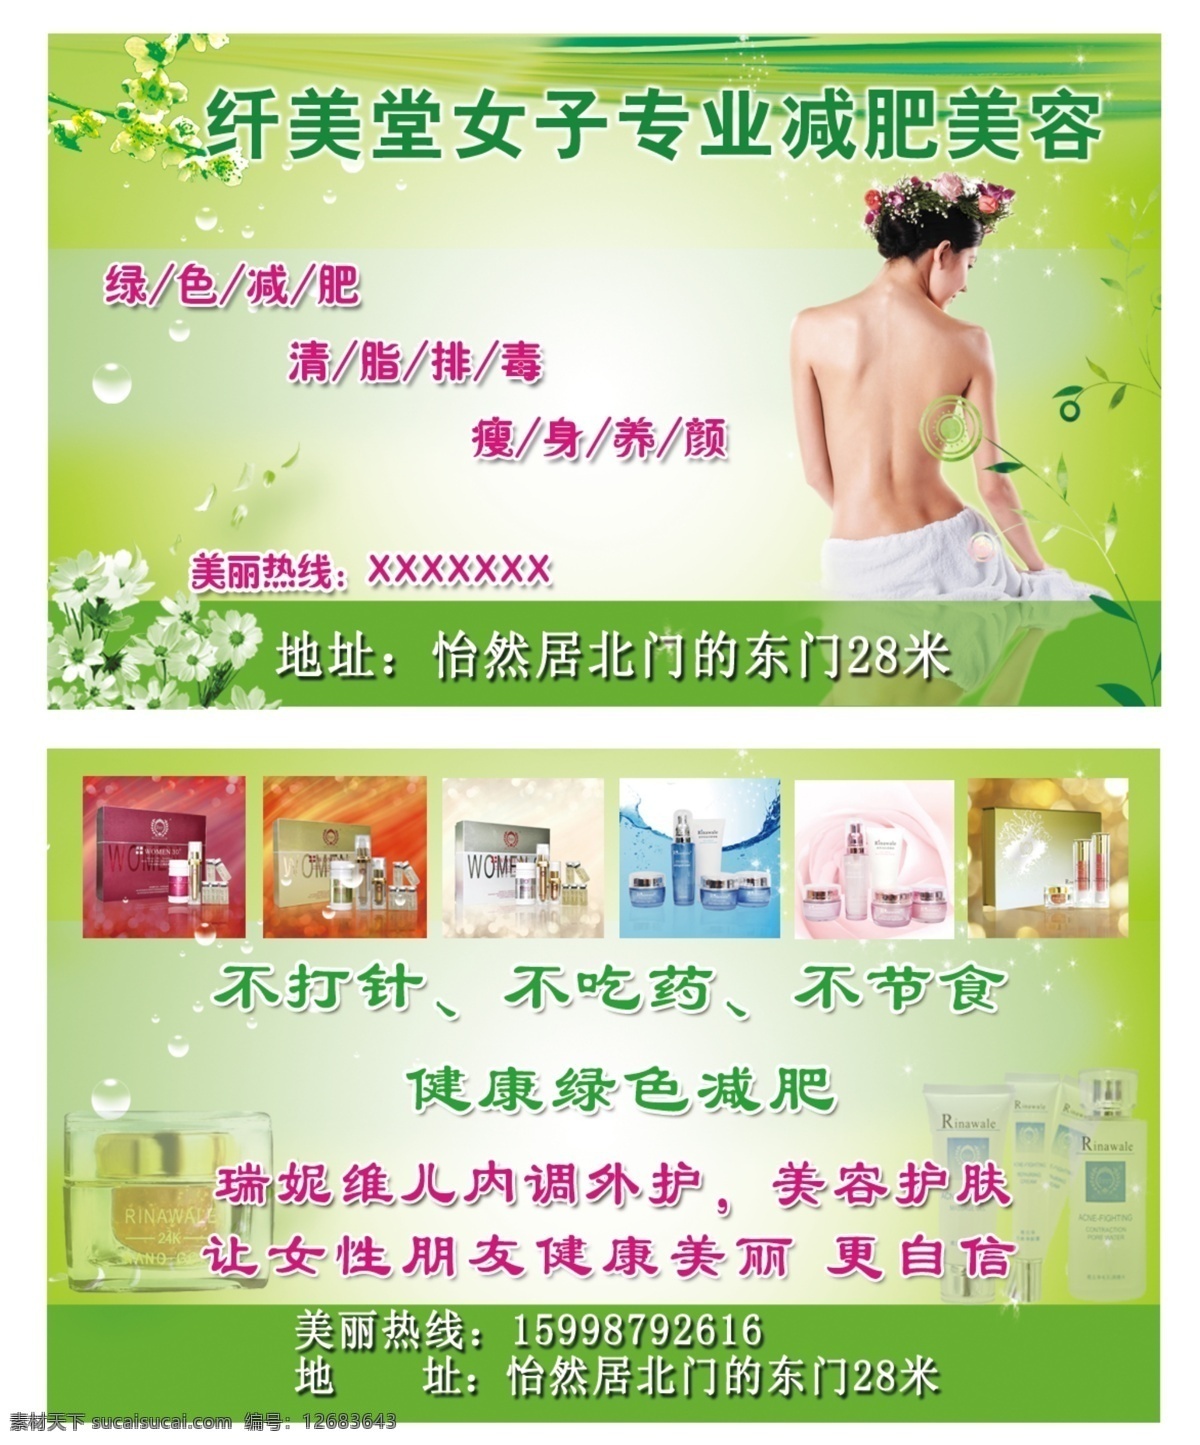 减肥美容名片 减肥 美容 产品 瑞倪维儿 护肤 绿色 名片卡片 广告设计模板 源文件